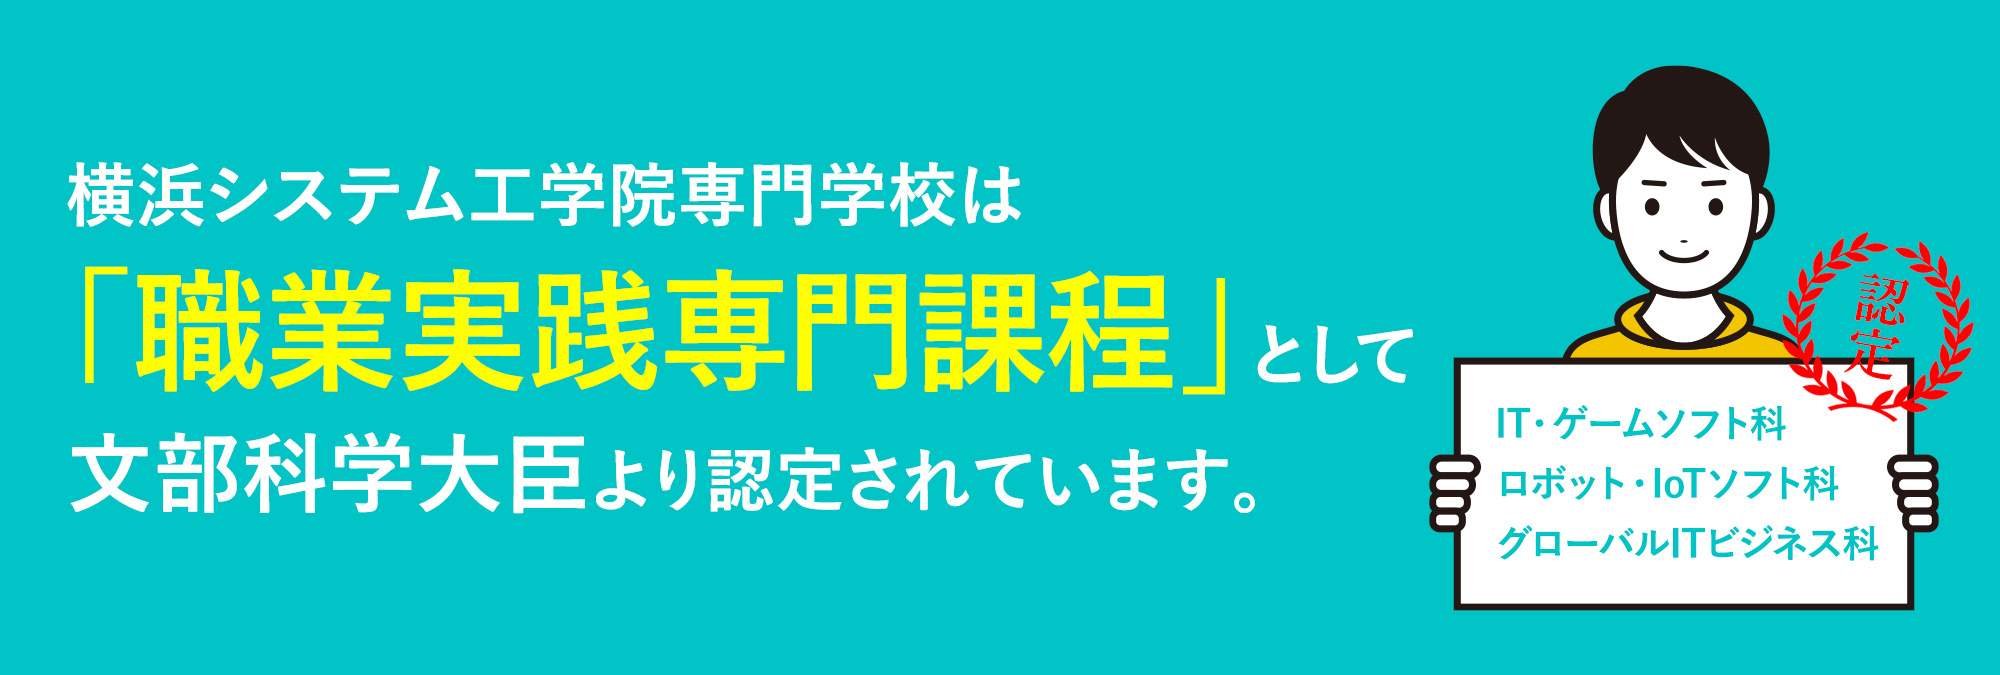 横浜システム工学院専門学校は「職業実践専門課程」として文部科学大臣より認定されています。